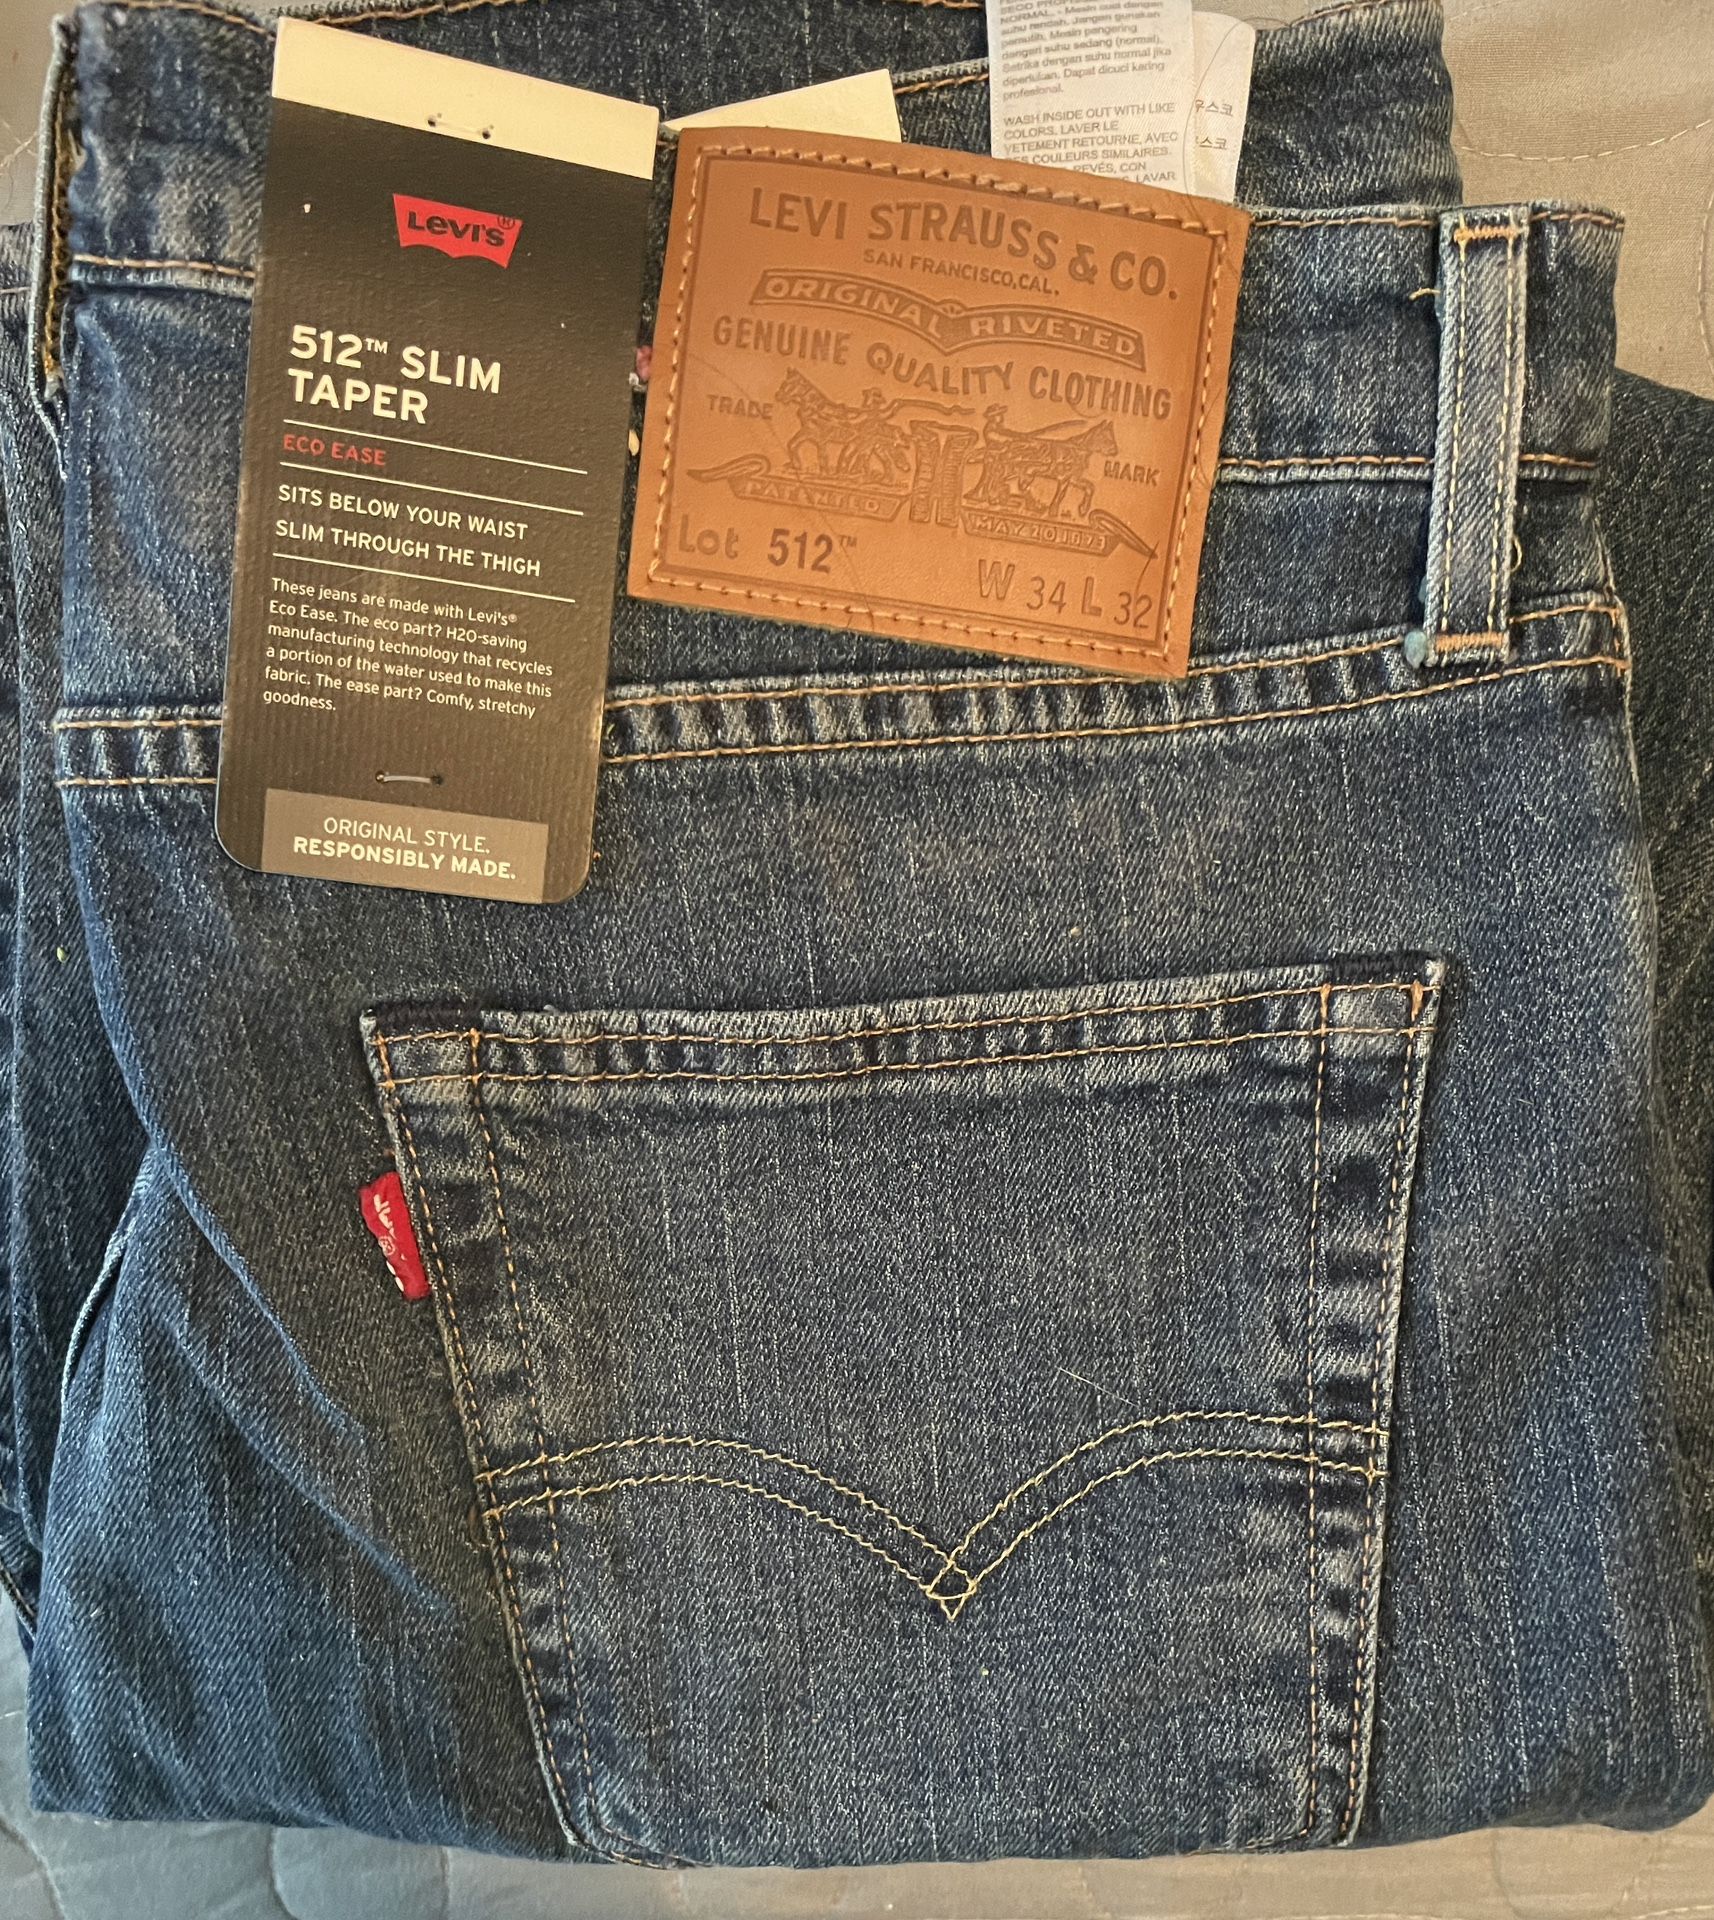 512 Slim Taper Levi’s Jeans For women 